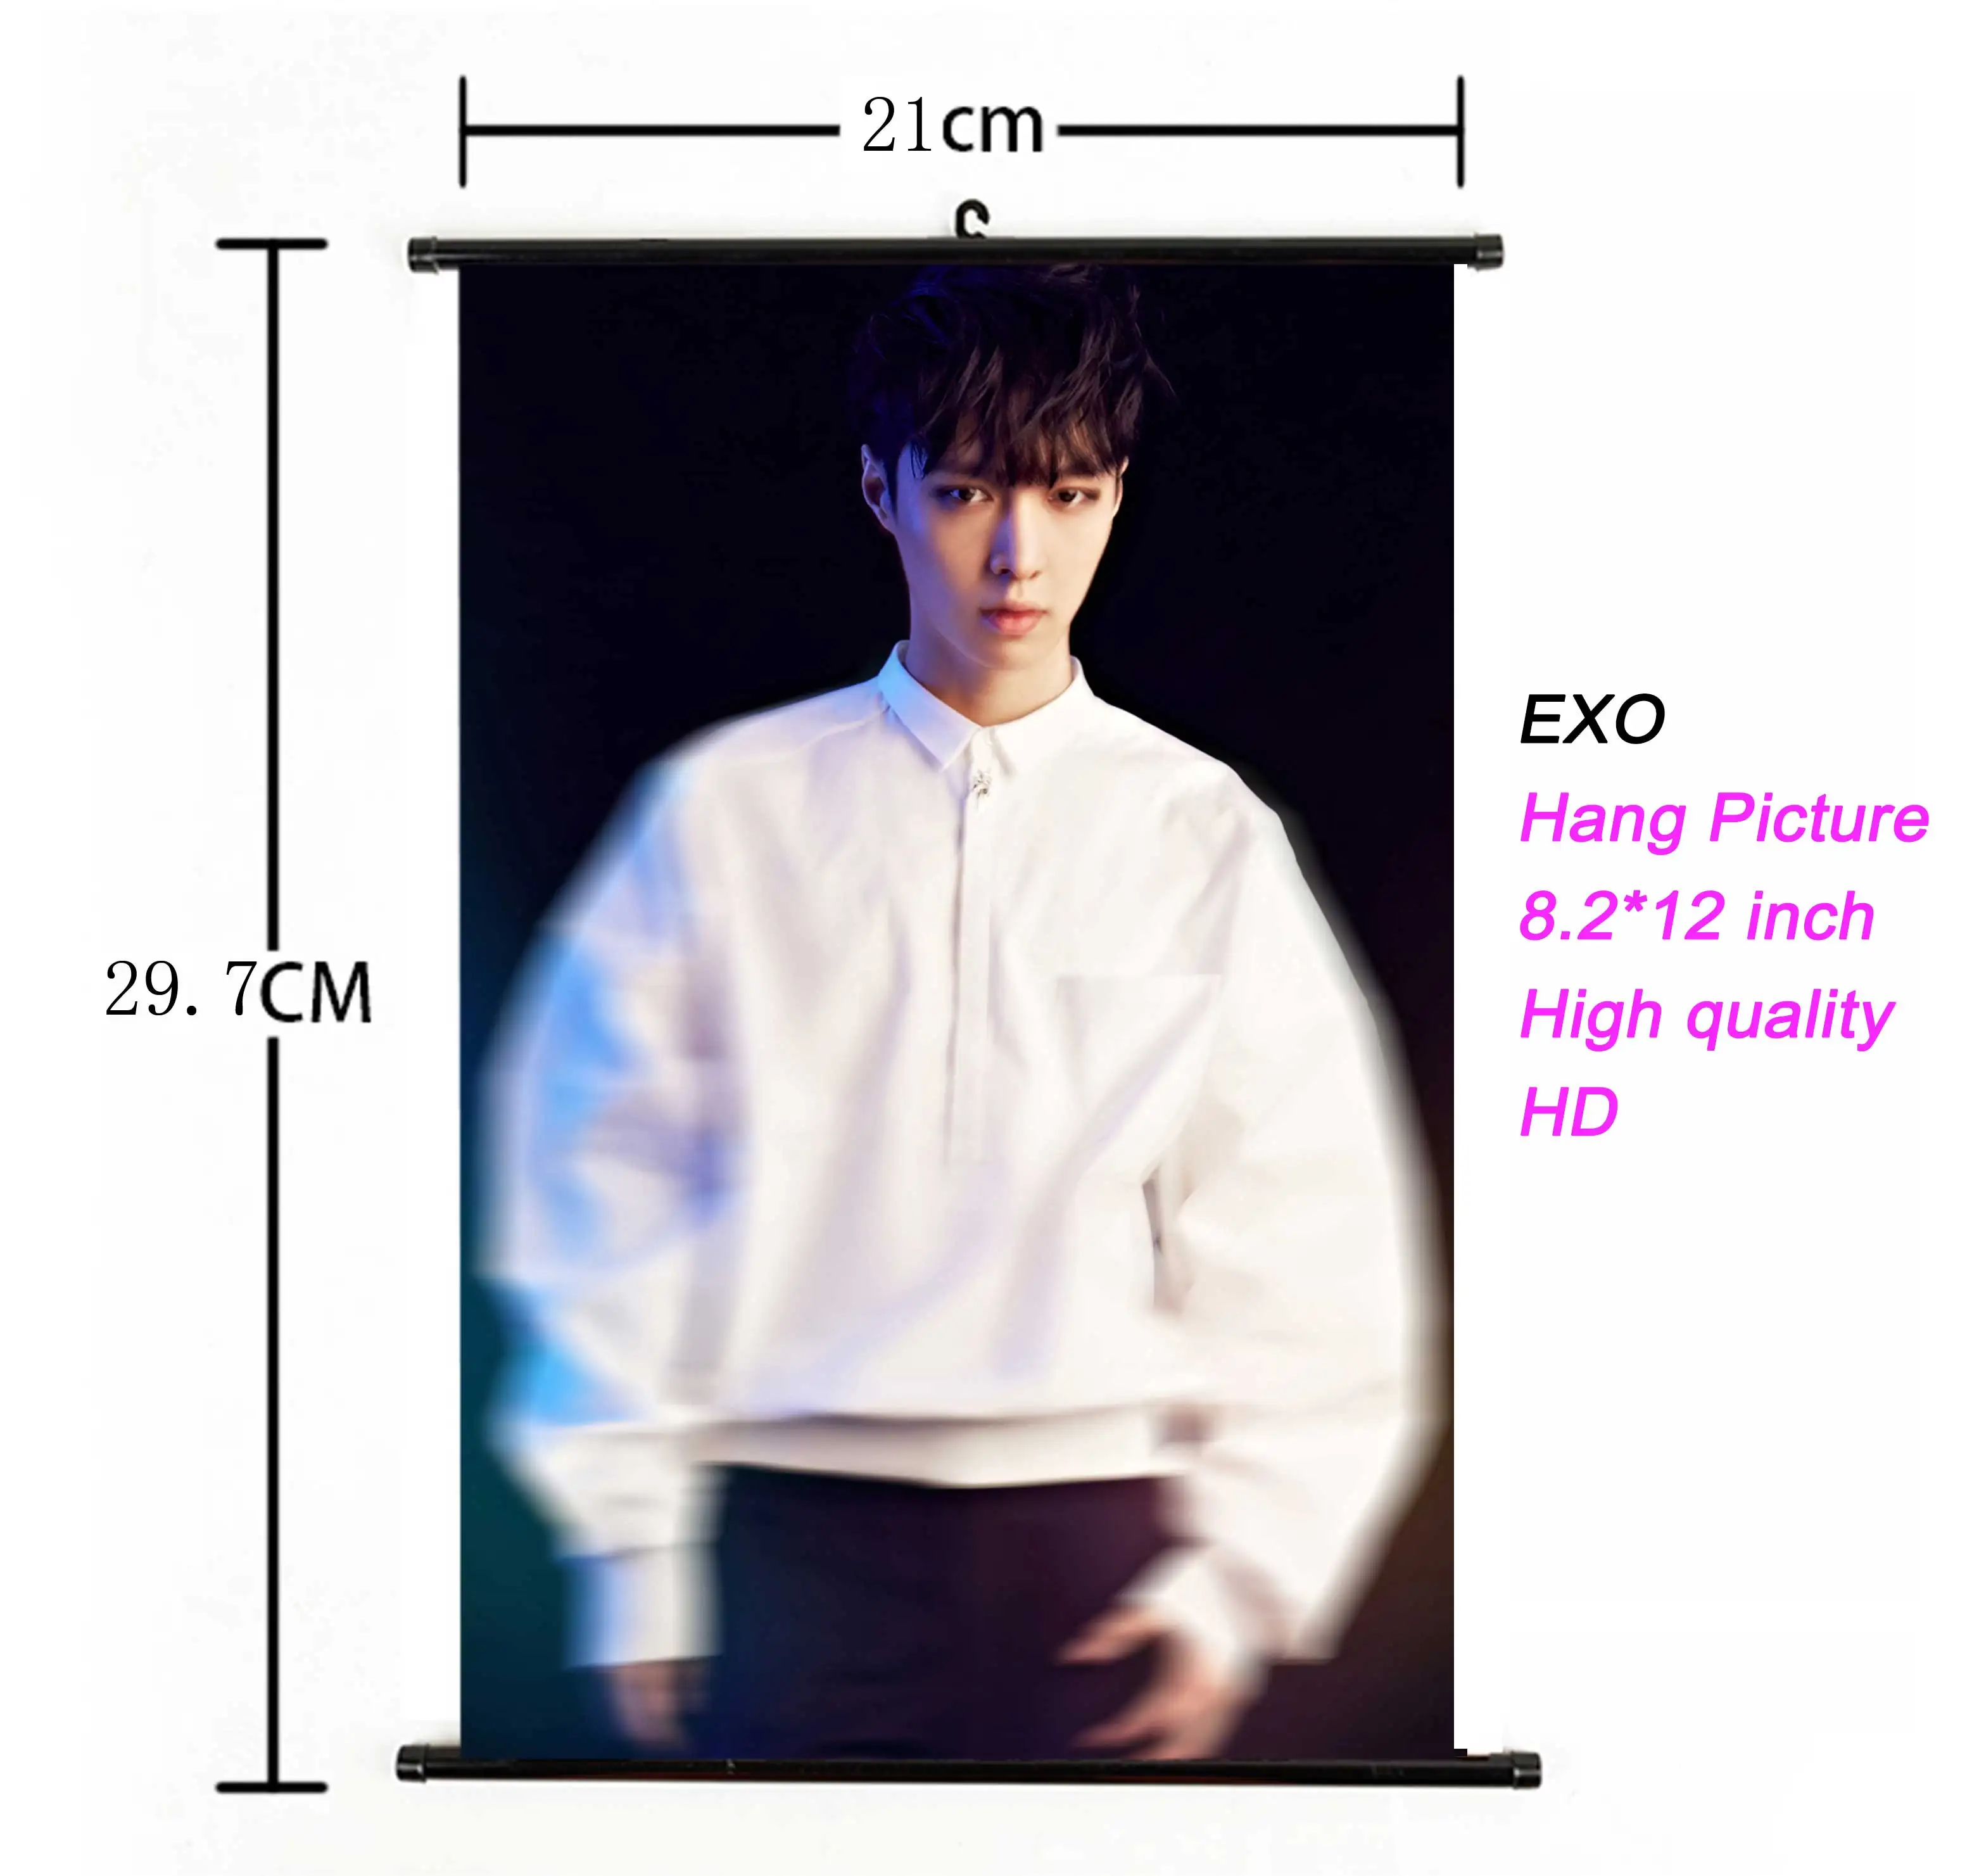 Kpop EXO висячий плакат для поклонников коллекции подарков ткань 21*30 см Высокое качество k-pop EXO альбом висячая картина фото плакат